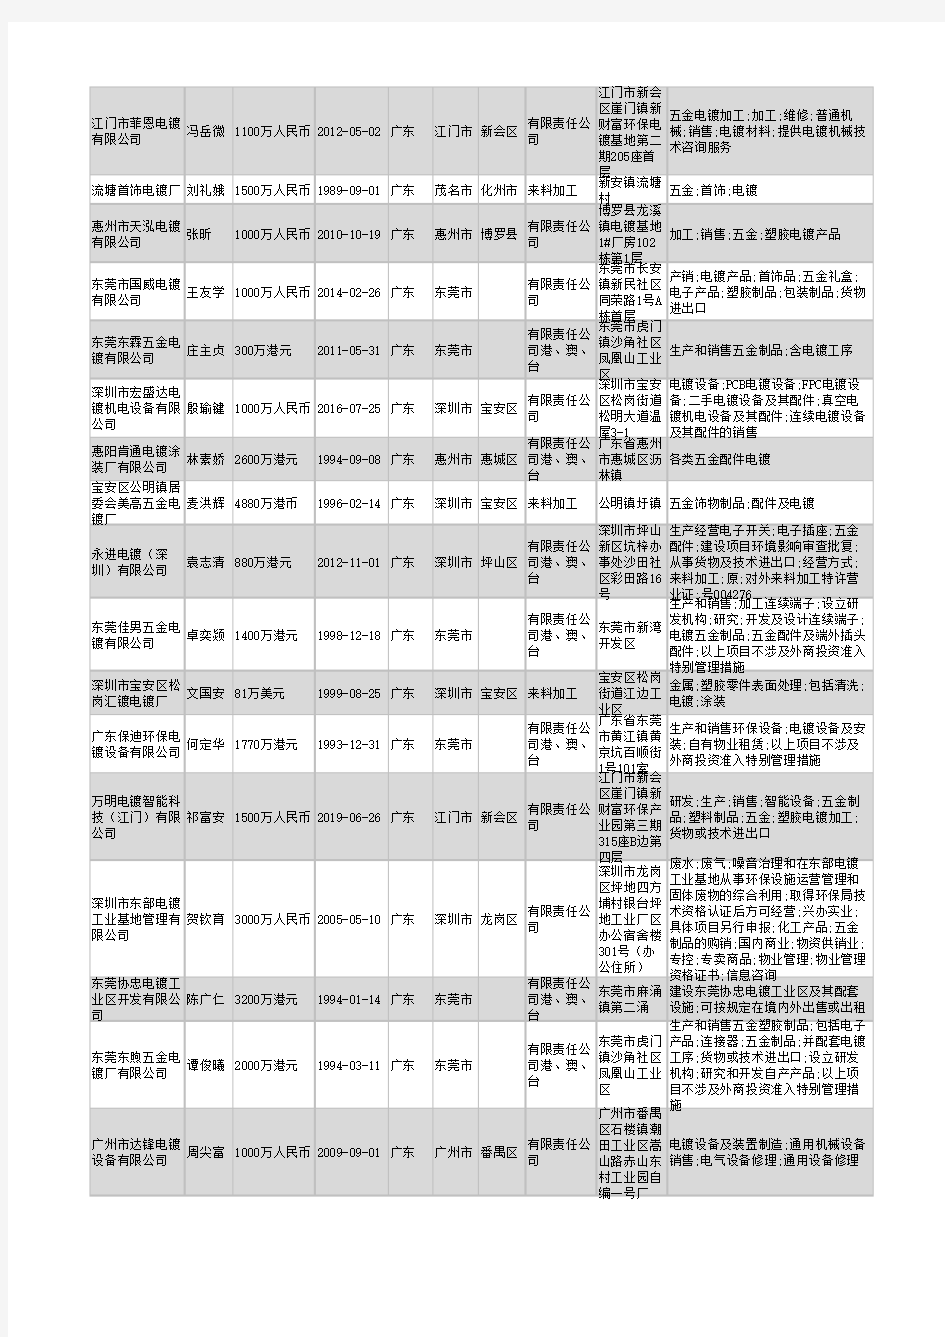 2021年广东省电镀行业企业名录8916家